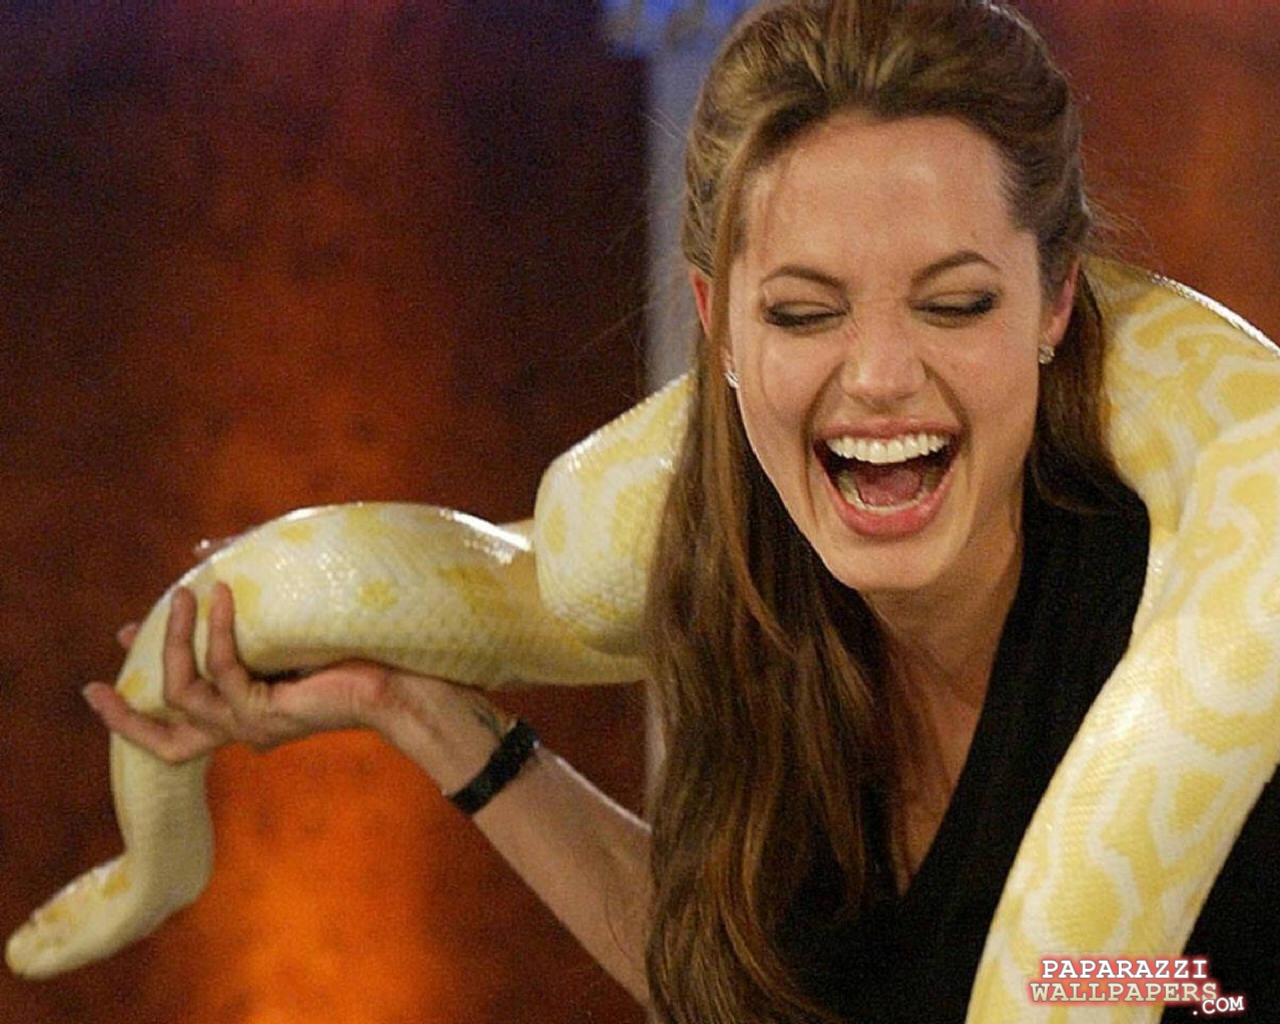 Женщина змея видео. Анджелина Джоли со змеей. Джоли с питоном. Джоли Анджелина змею. Анджелина Джоли с питоном фото.